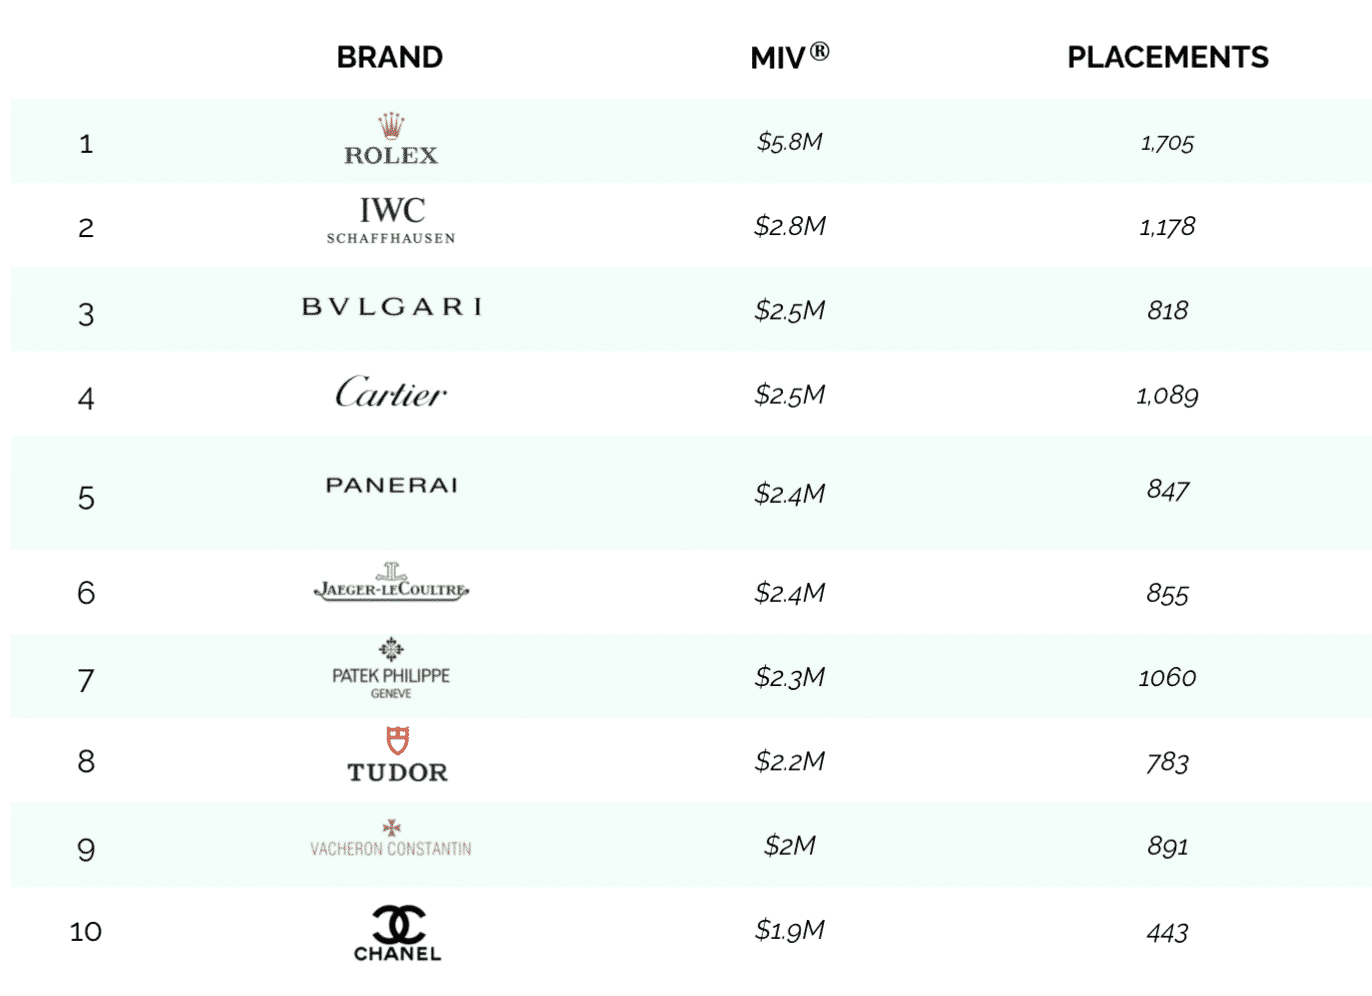 top 10 luxury watch brands